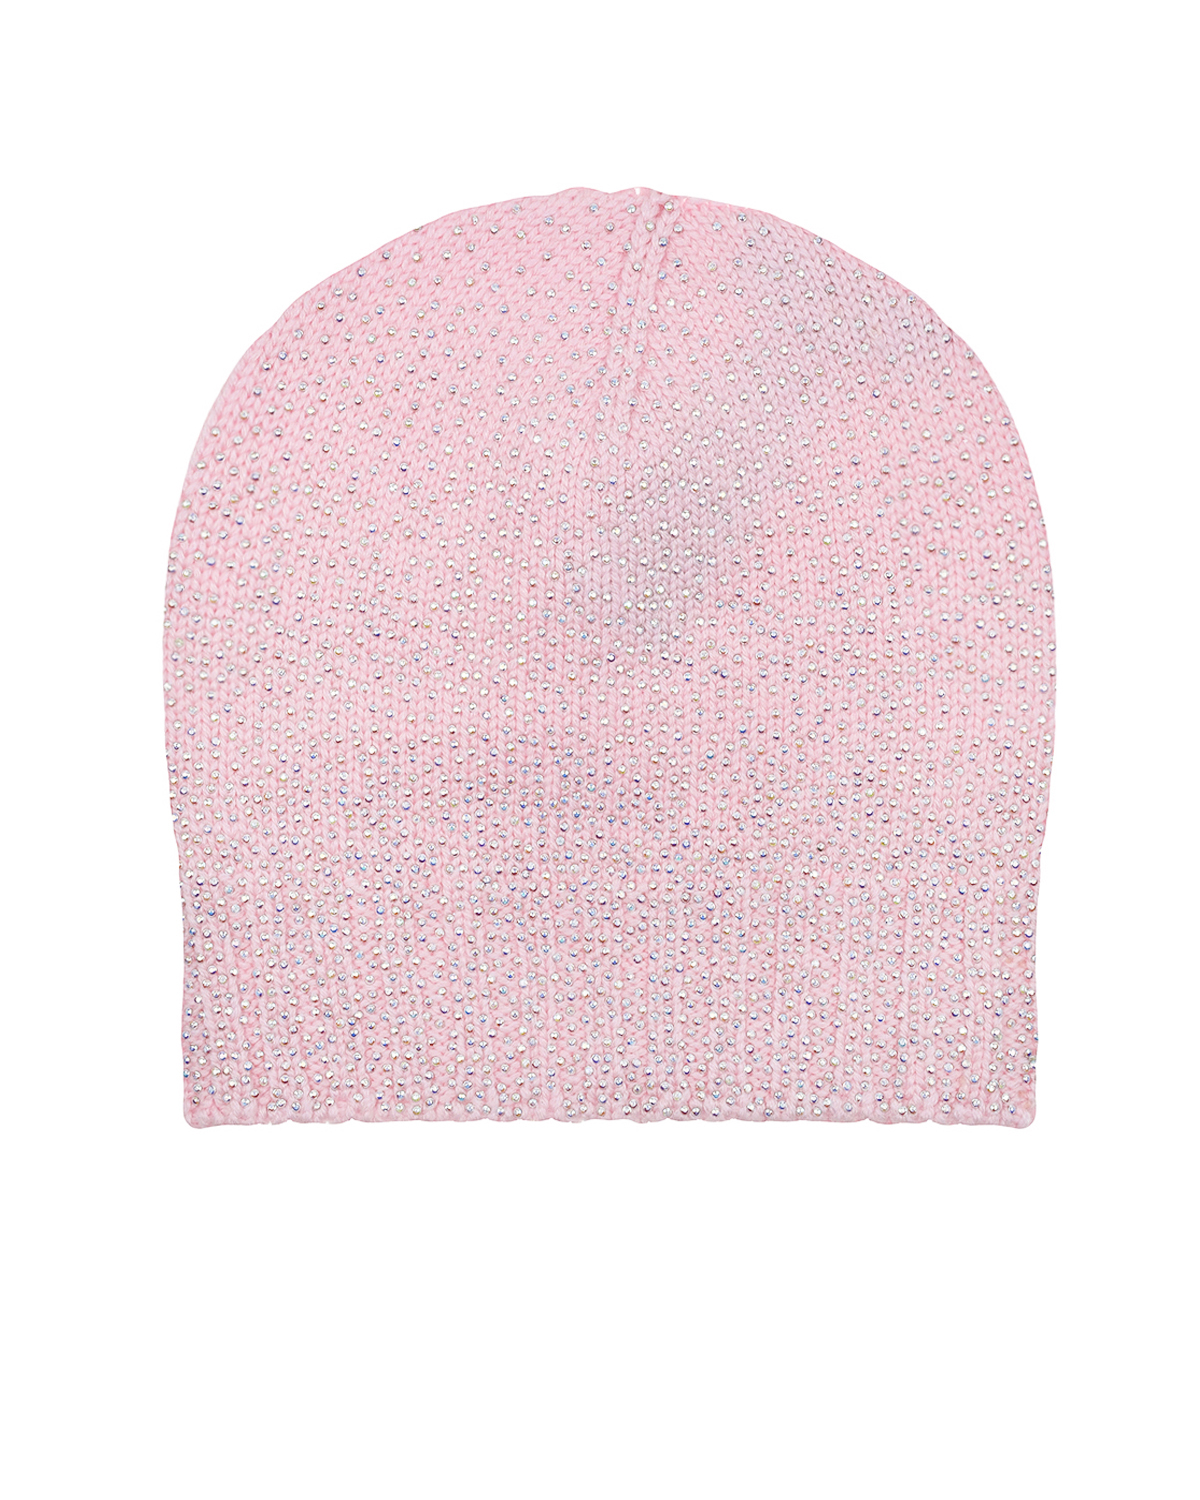 Розовая шапка со стразами Regina детская, размер 57, цвет розовый - фото 1